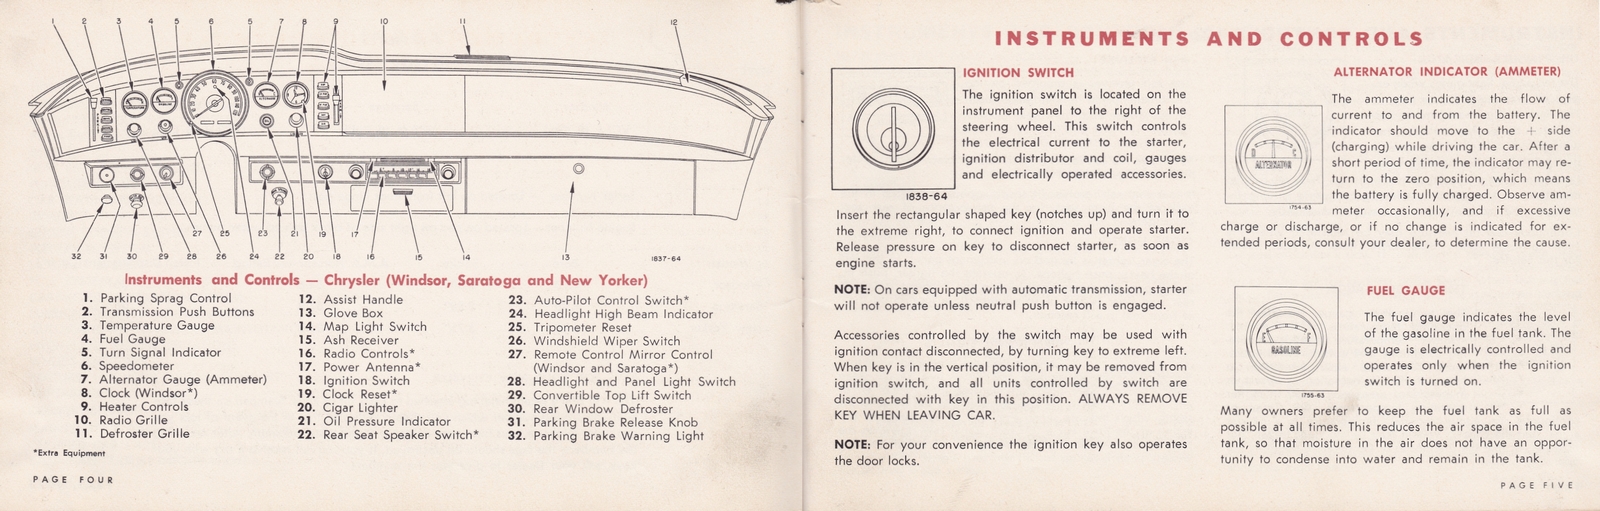 n_1964 Chrysler Owner's Manual (Cdn)-04-05.jpg